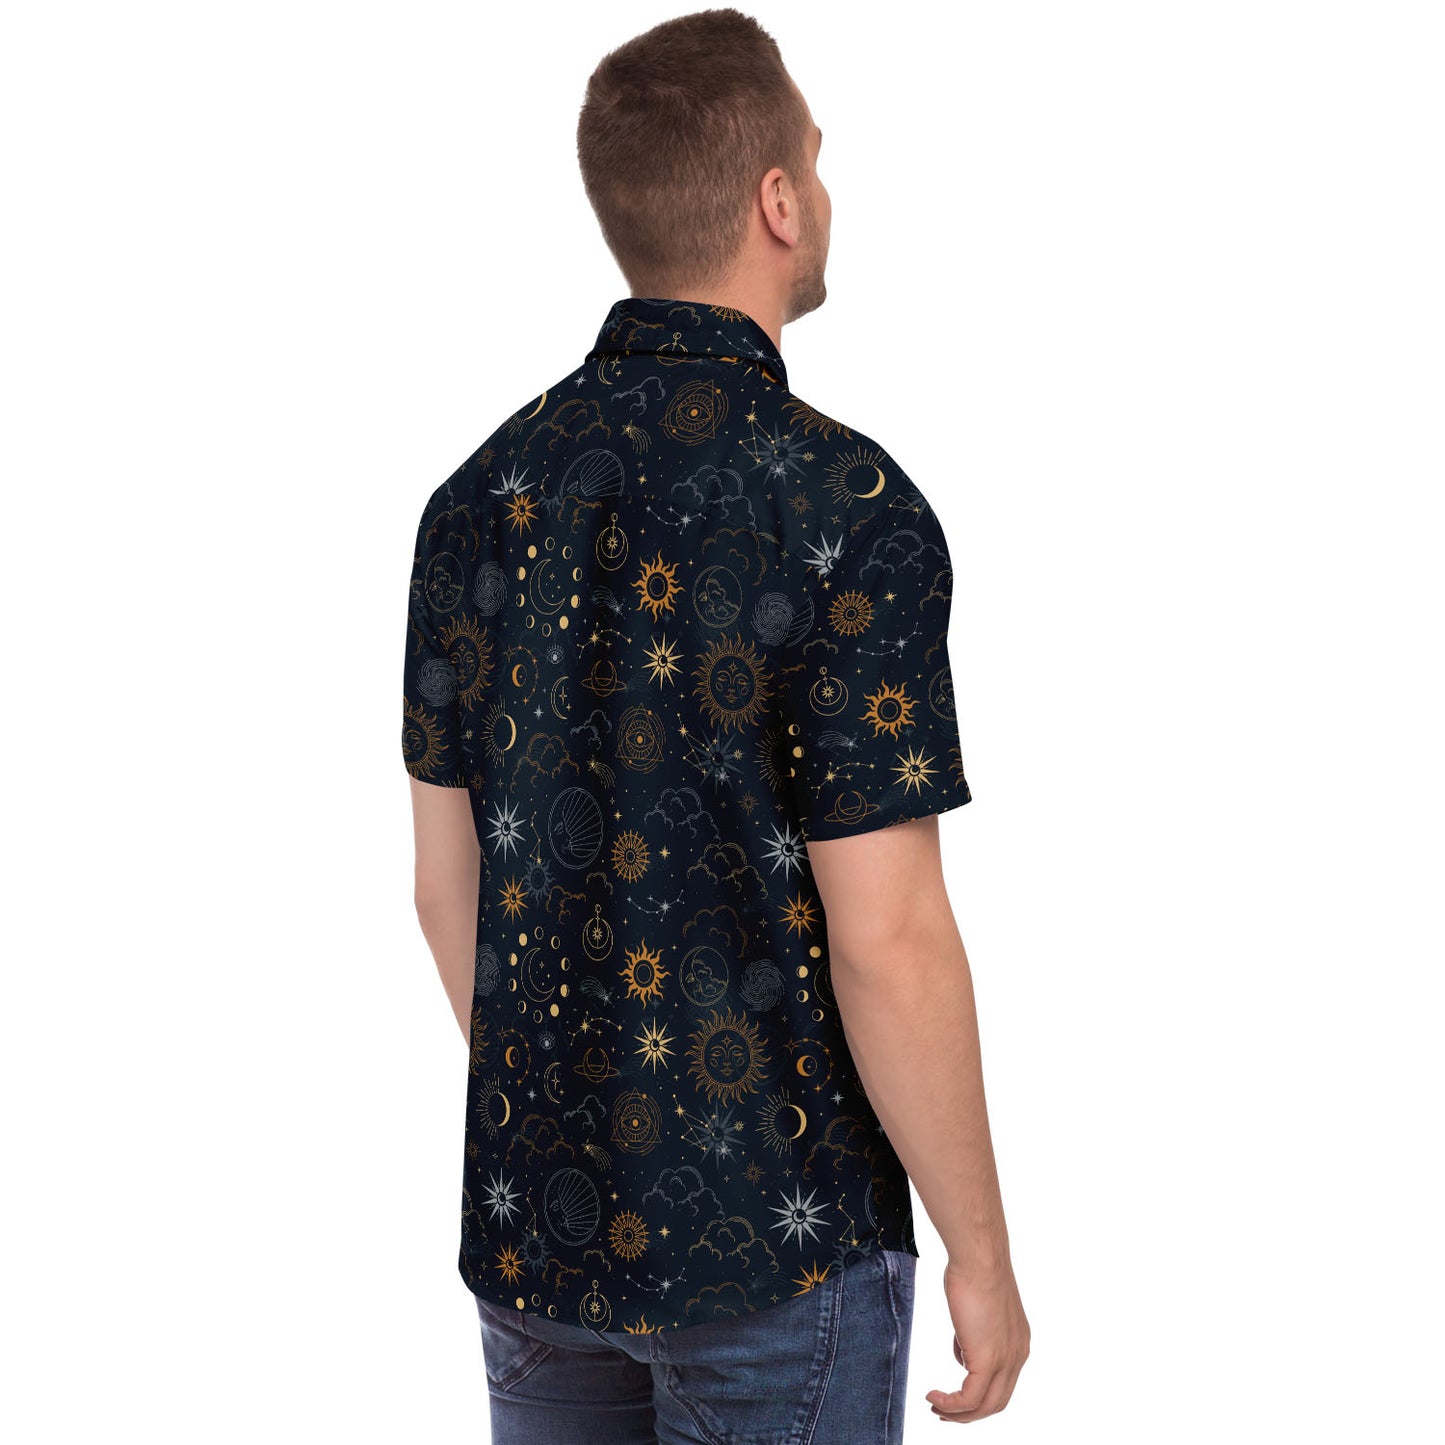 Celestial short sleeve button-up shirt